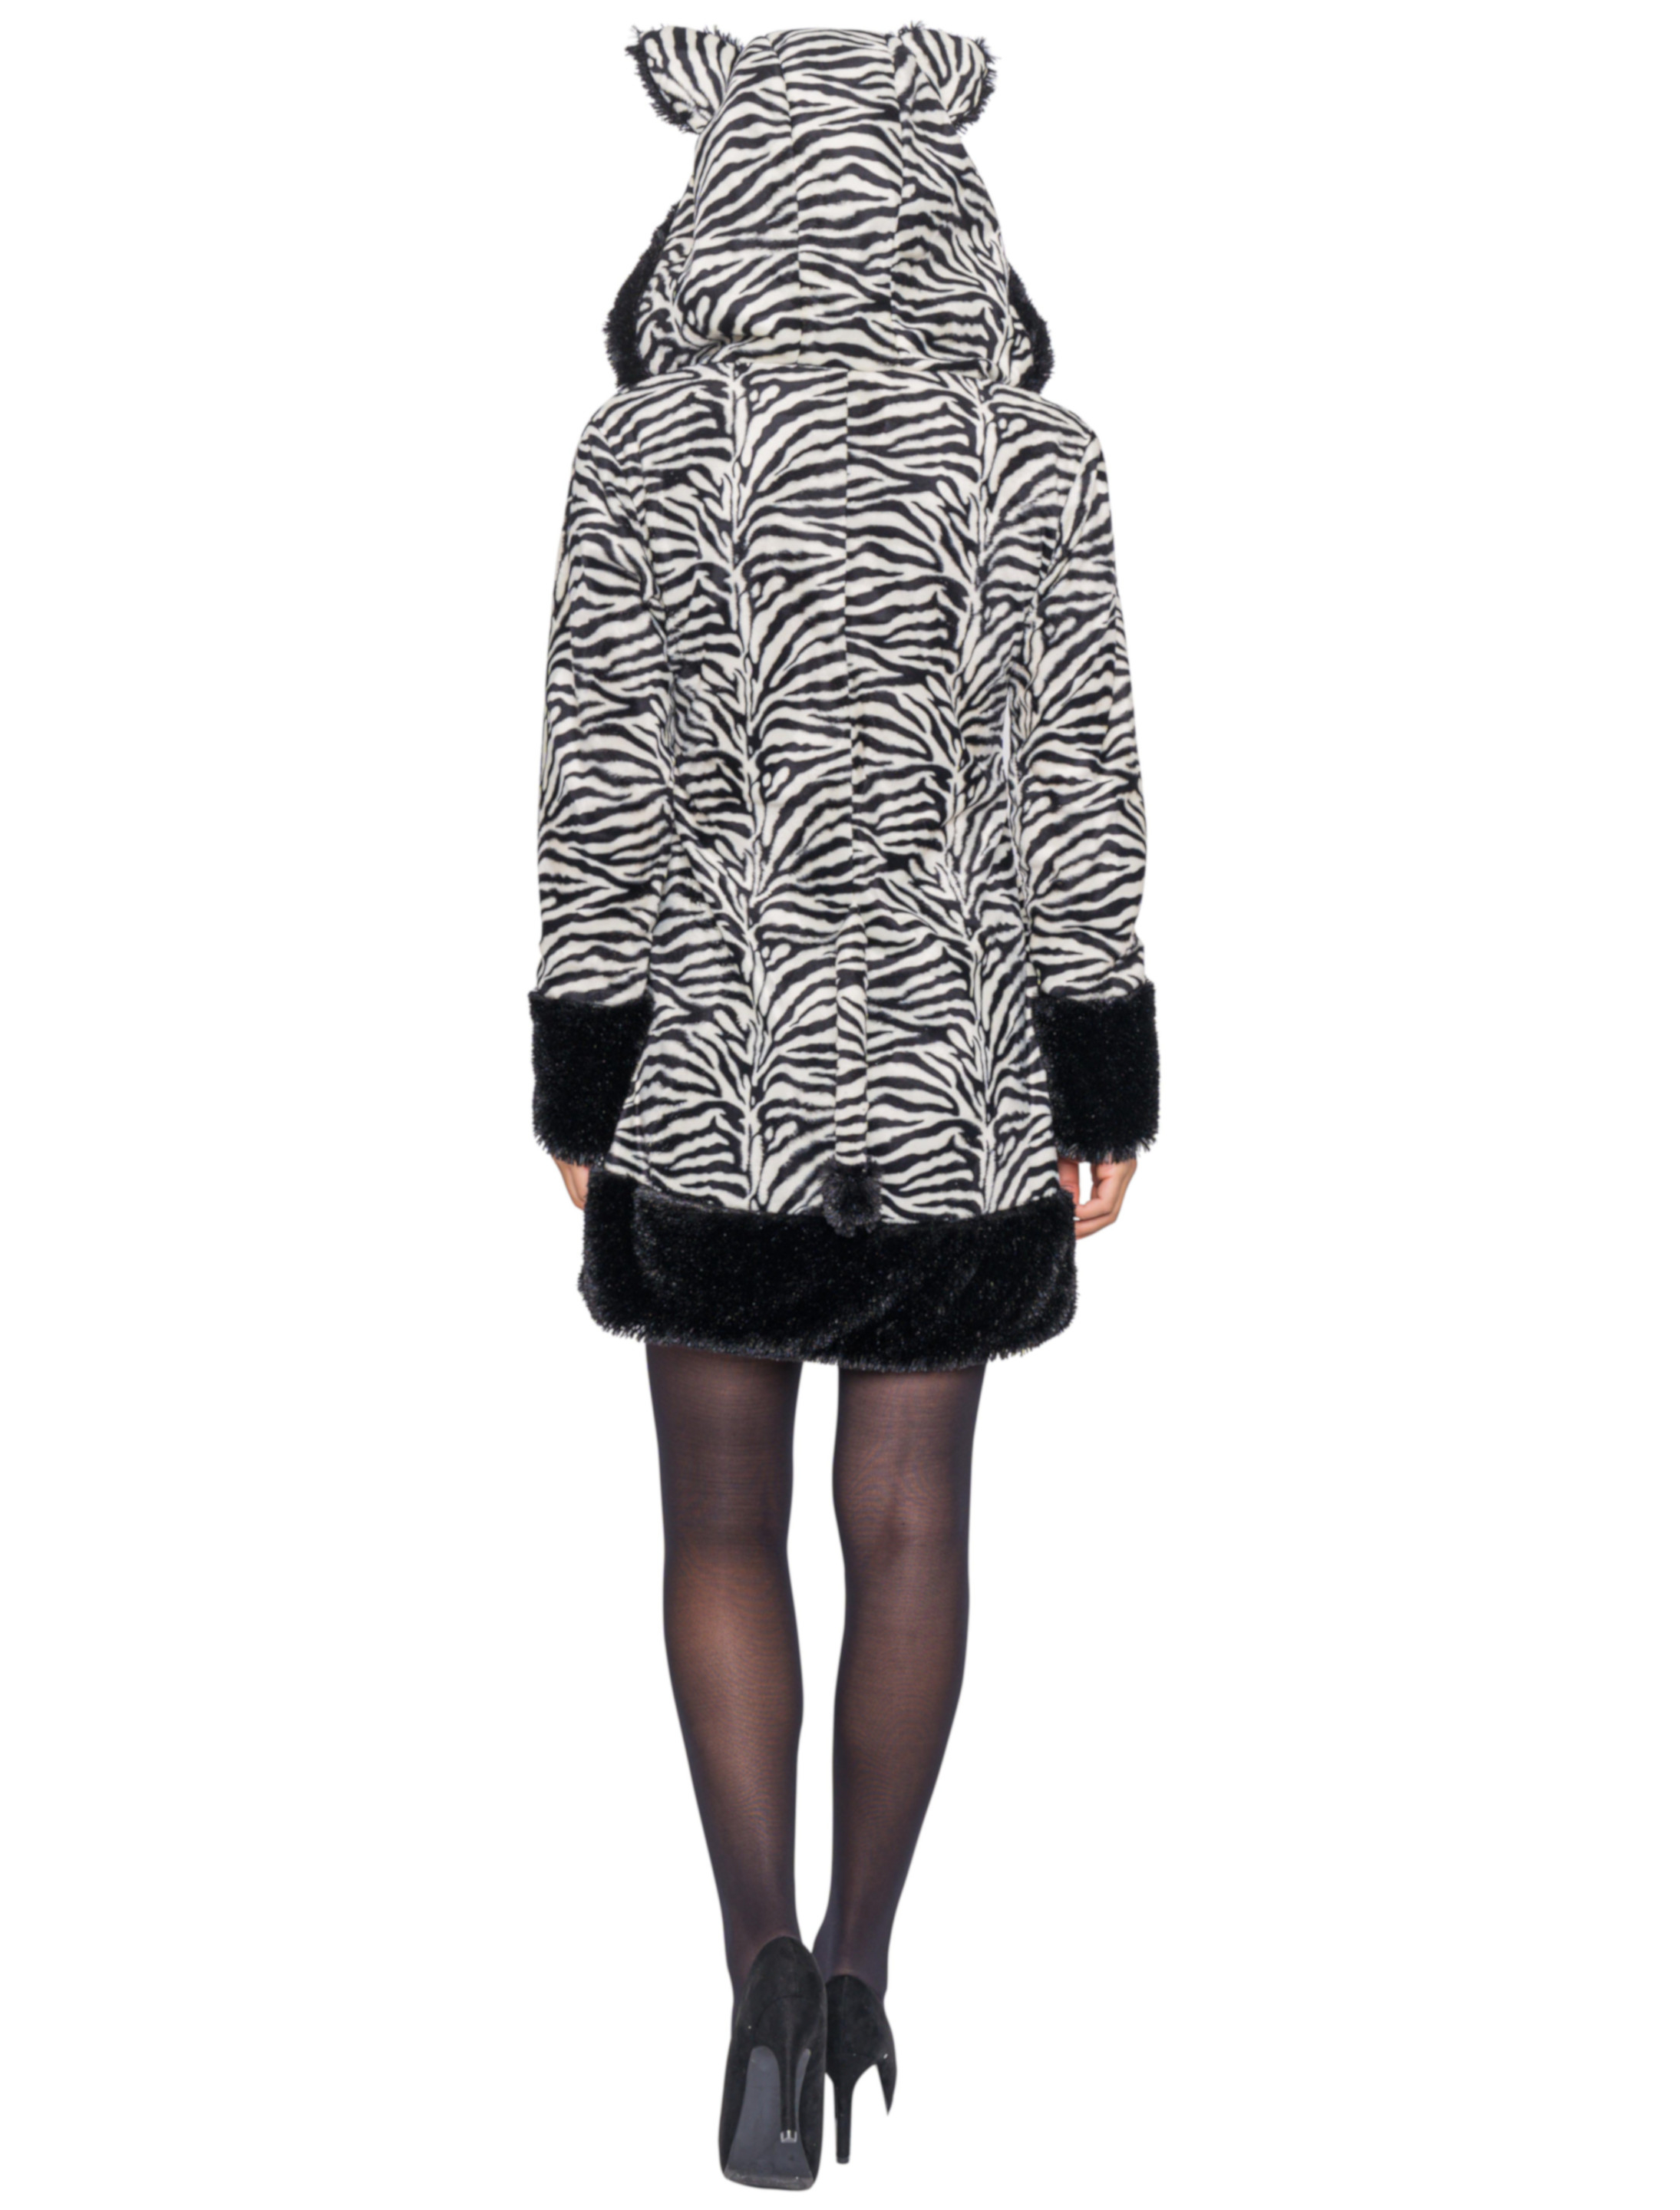 Kleid Plüsch Zebra Damen schwarz/weiß 34